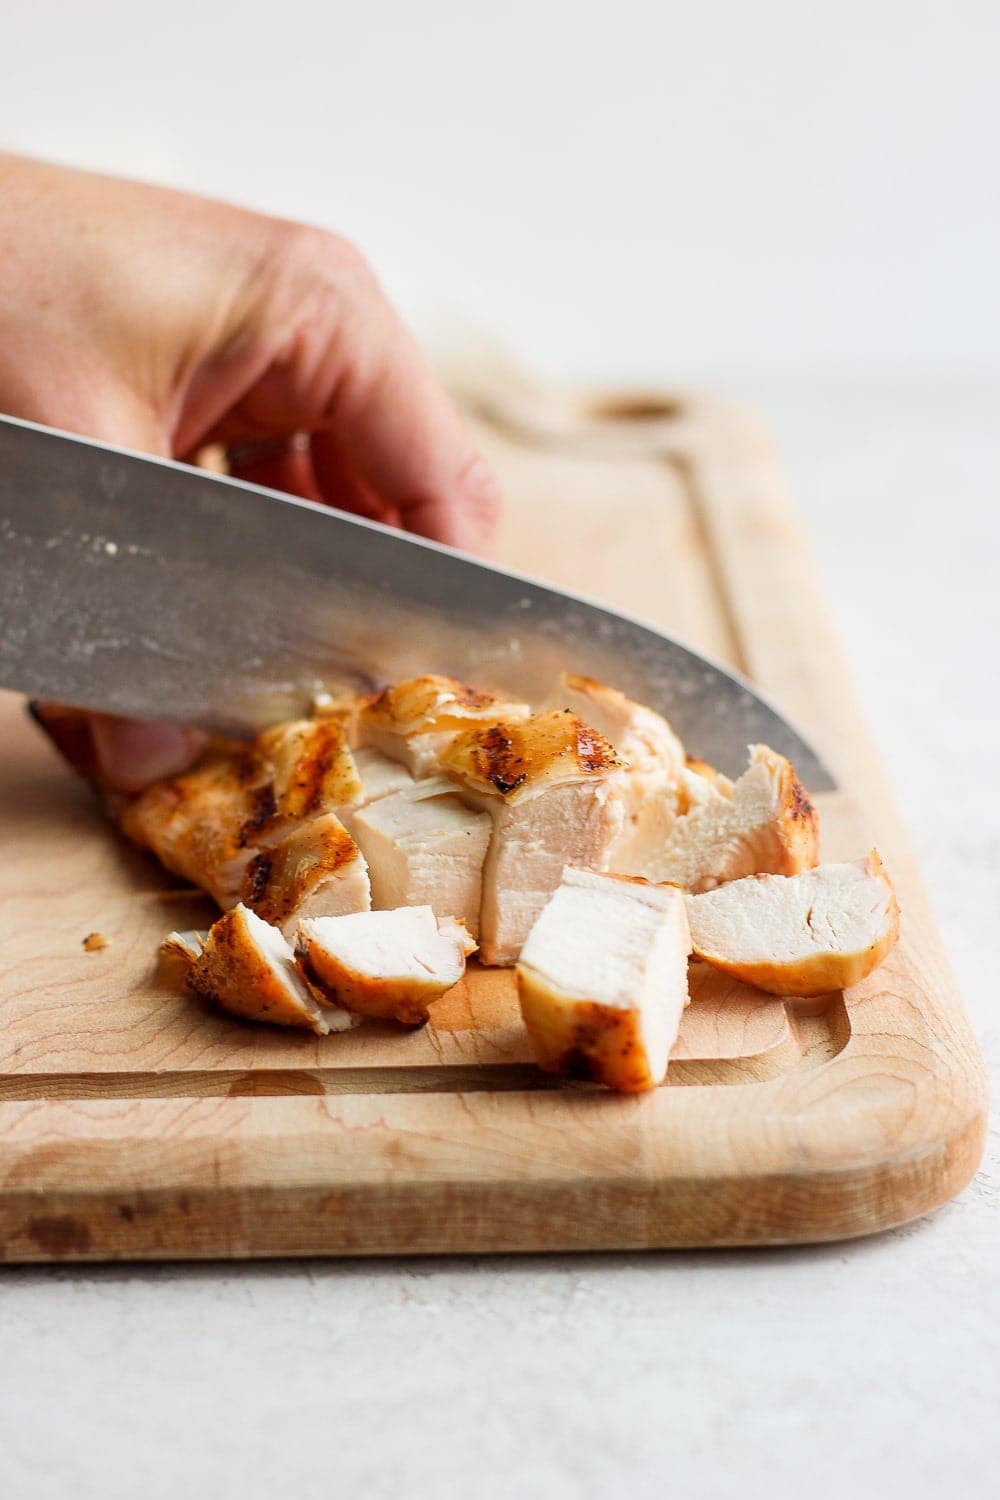 knife cutting chicken breast on cutting board.